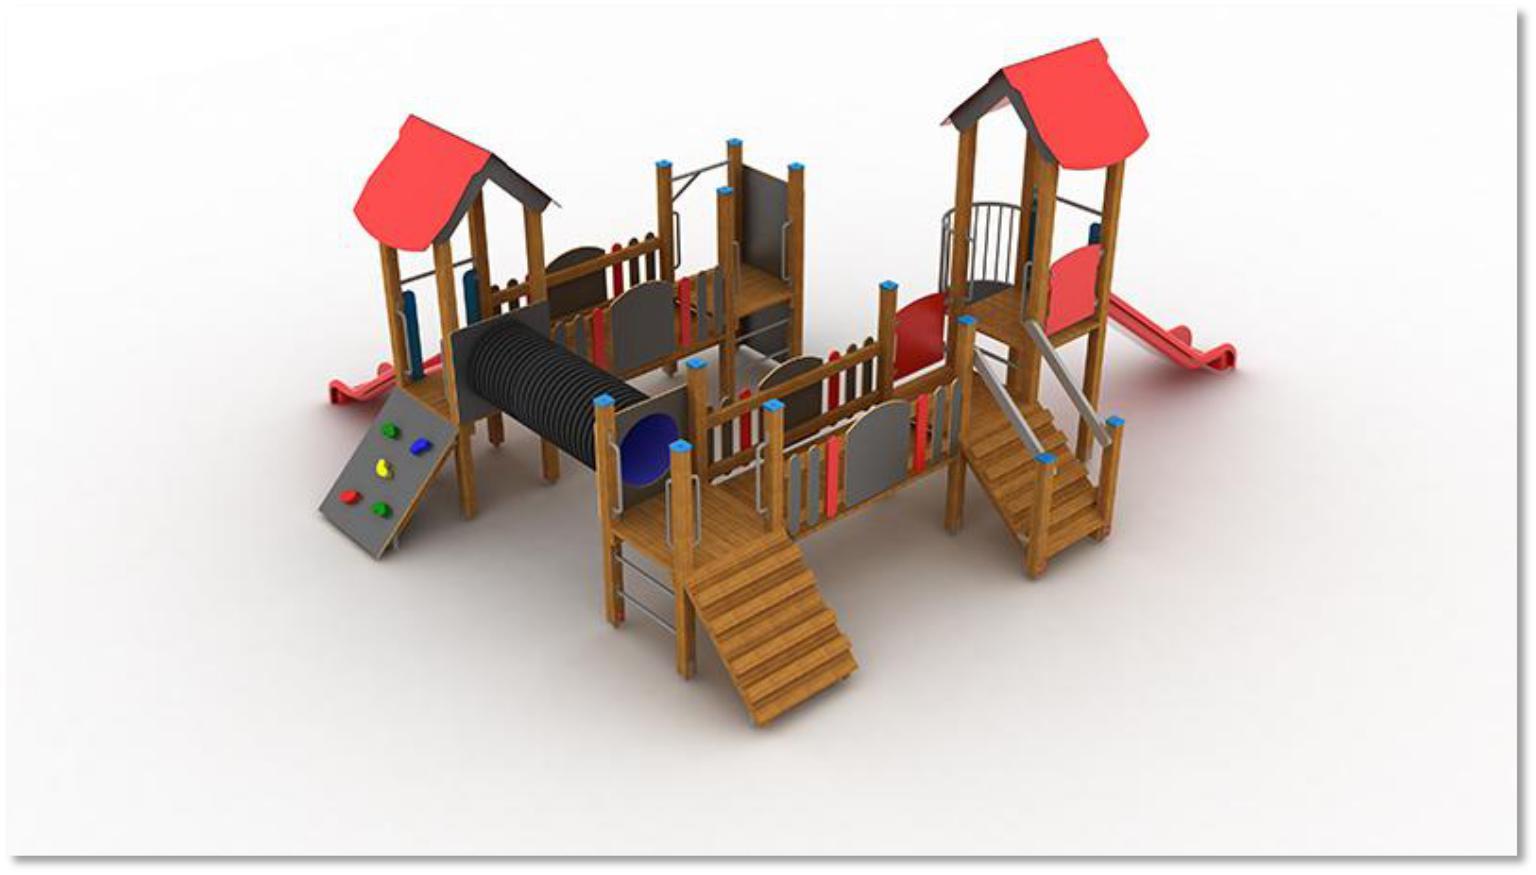 Zestaw zabawowy dla starszych dzieci wieża z dachem dwuspadowym ( podest h = 135 cm) wieża z dachem dwuspadowym ( podest h = 90 cm) 3 x wieża ( podest h